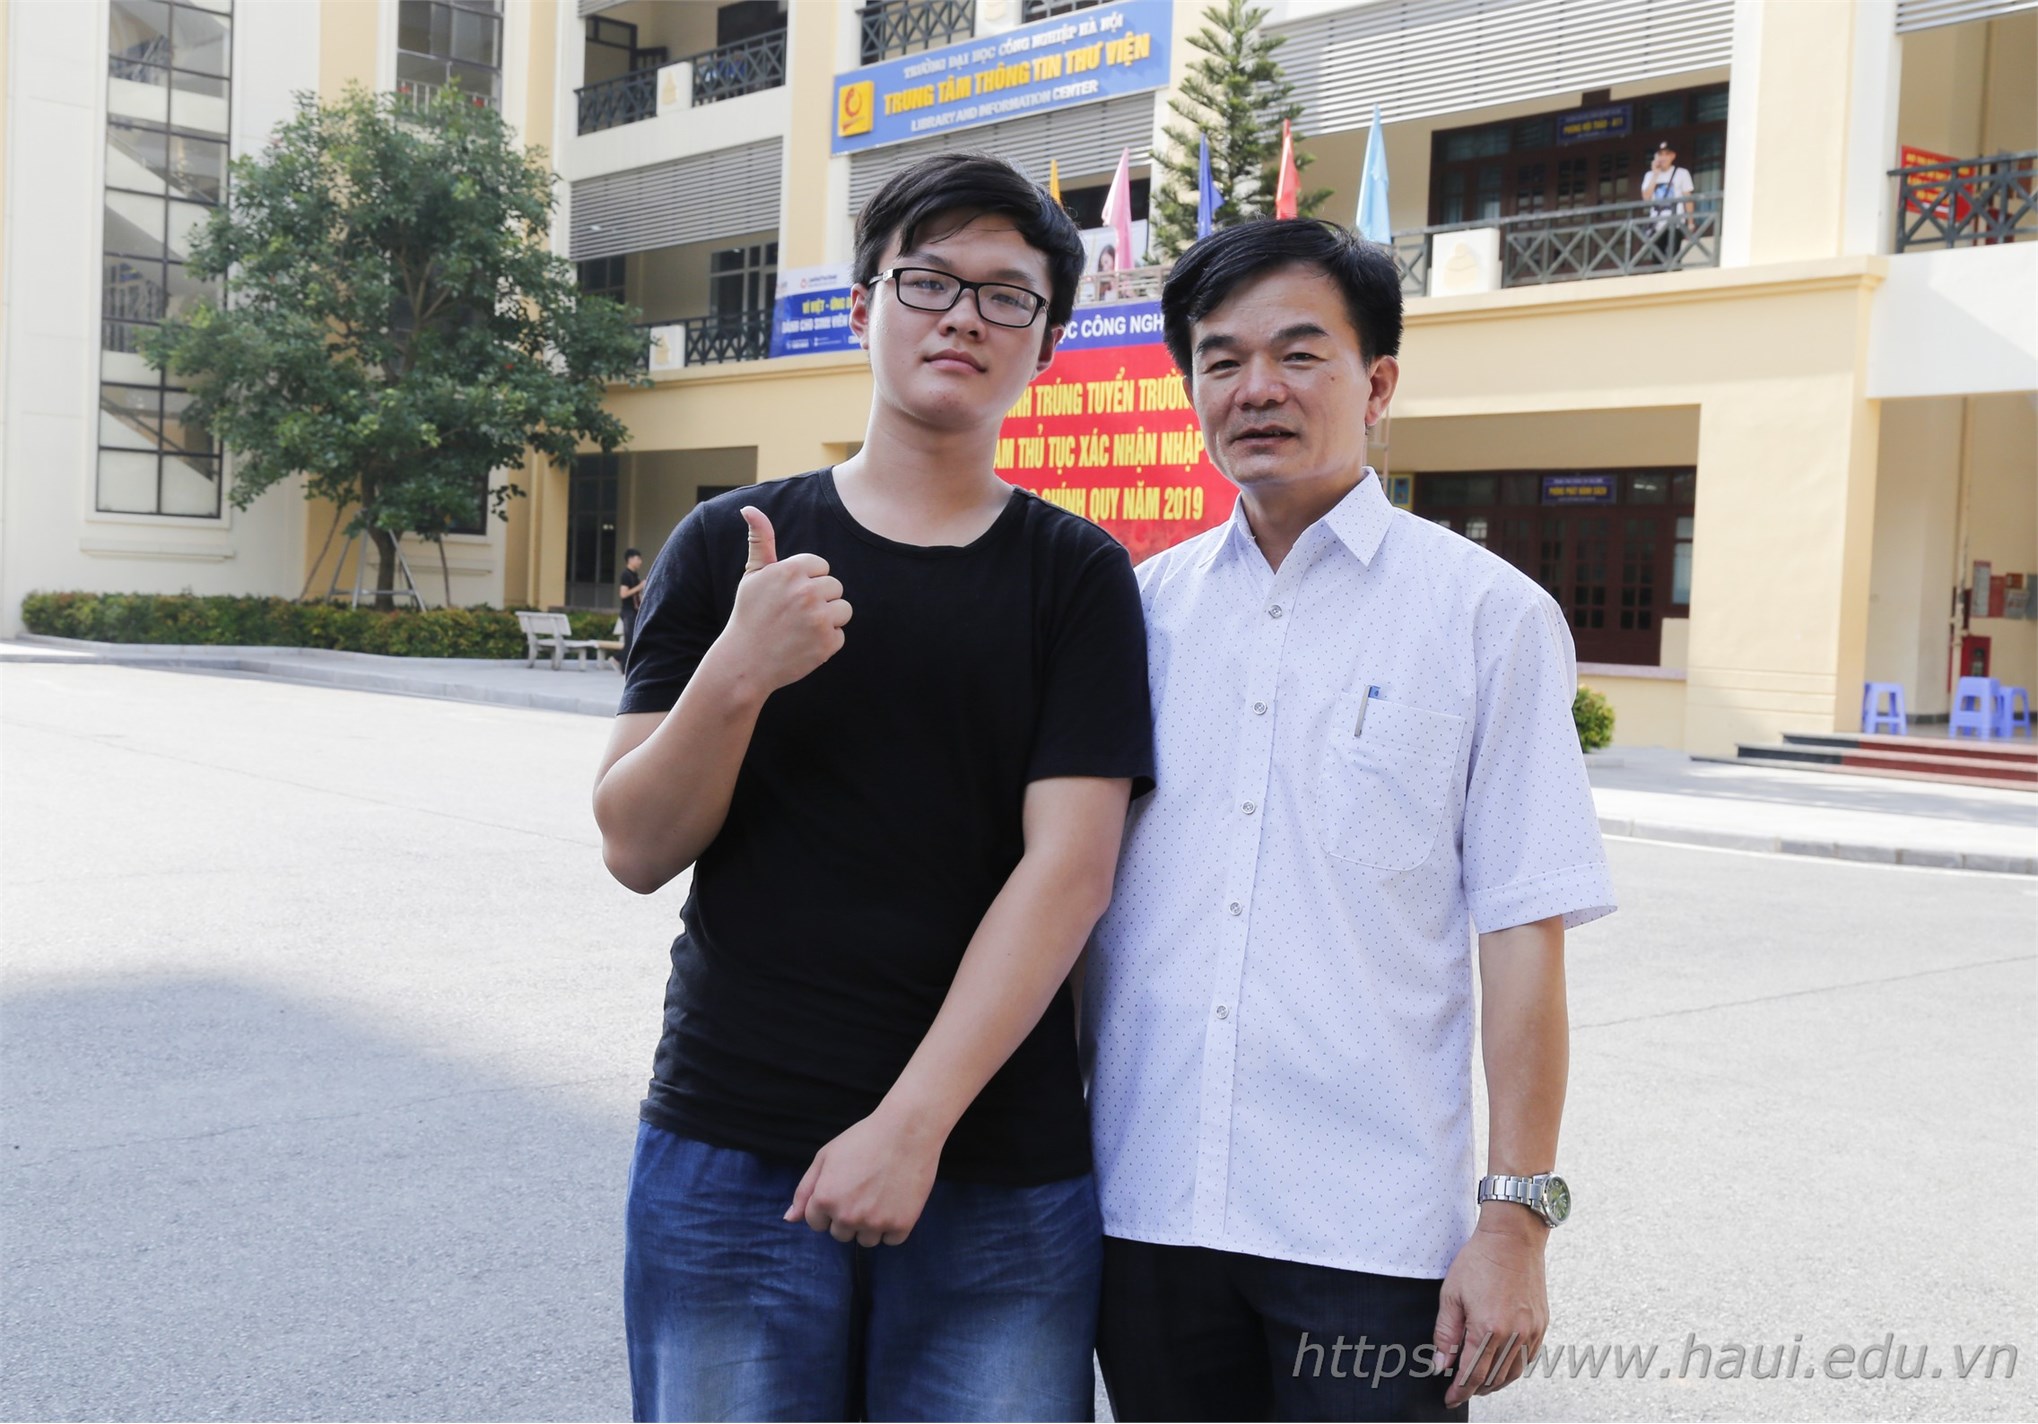 Thí sinh đăng ký xác nhận nhập học tai Đại học Công nghiệp Hà Nội năm 2019